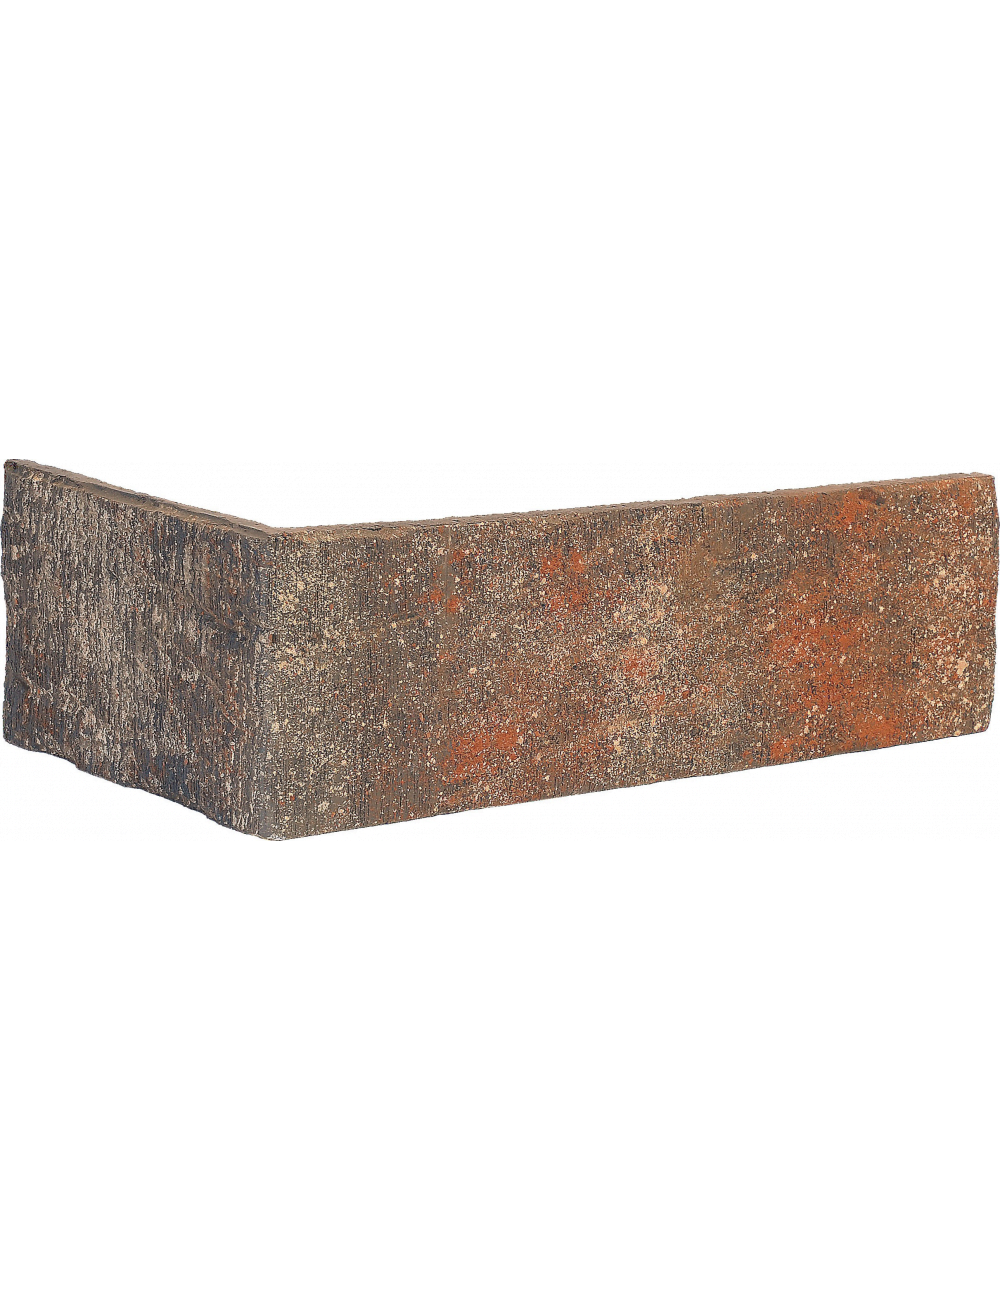 Colțar ceramic Klinker - Bastille (Bastille wall) (HF16) 115/240X71X10